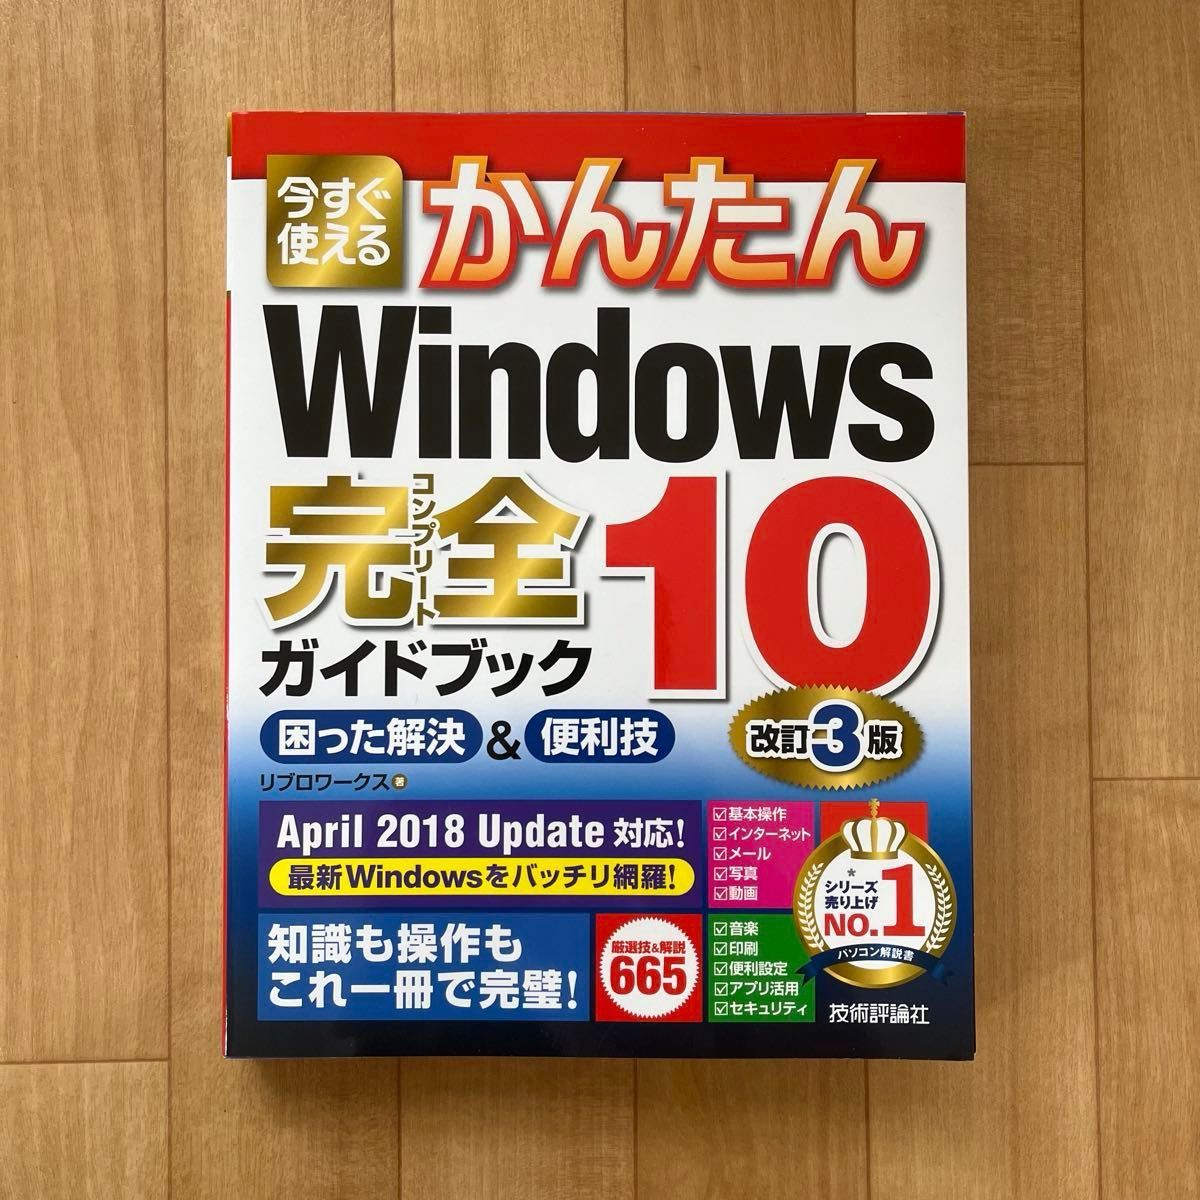 Windows 10完全ガイドブック 困った解決&便利技